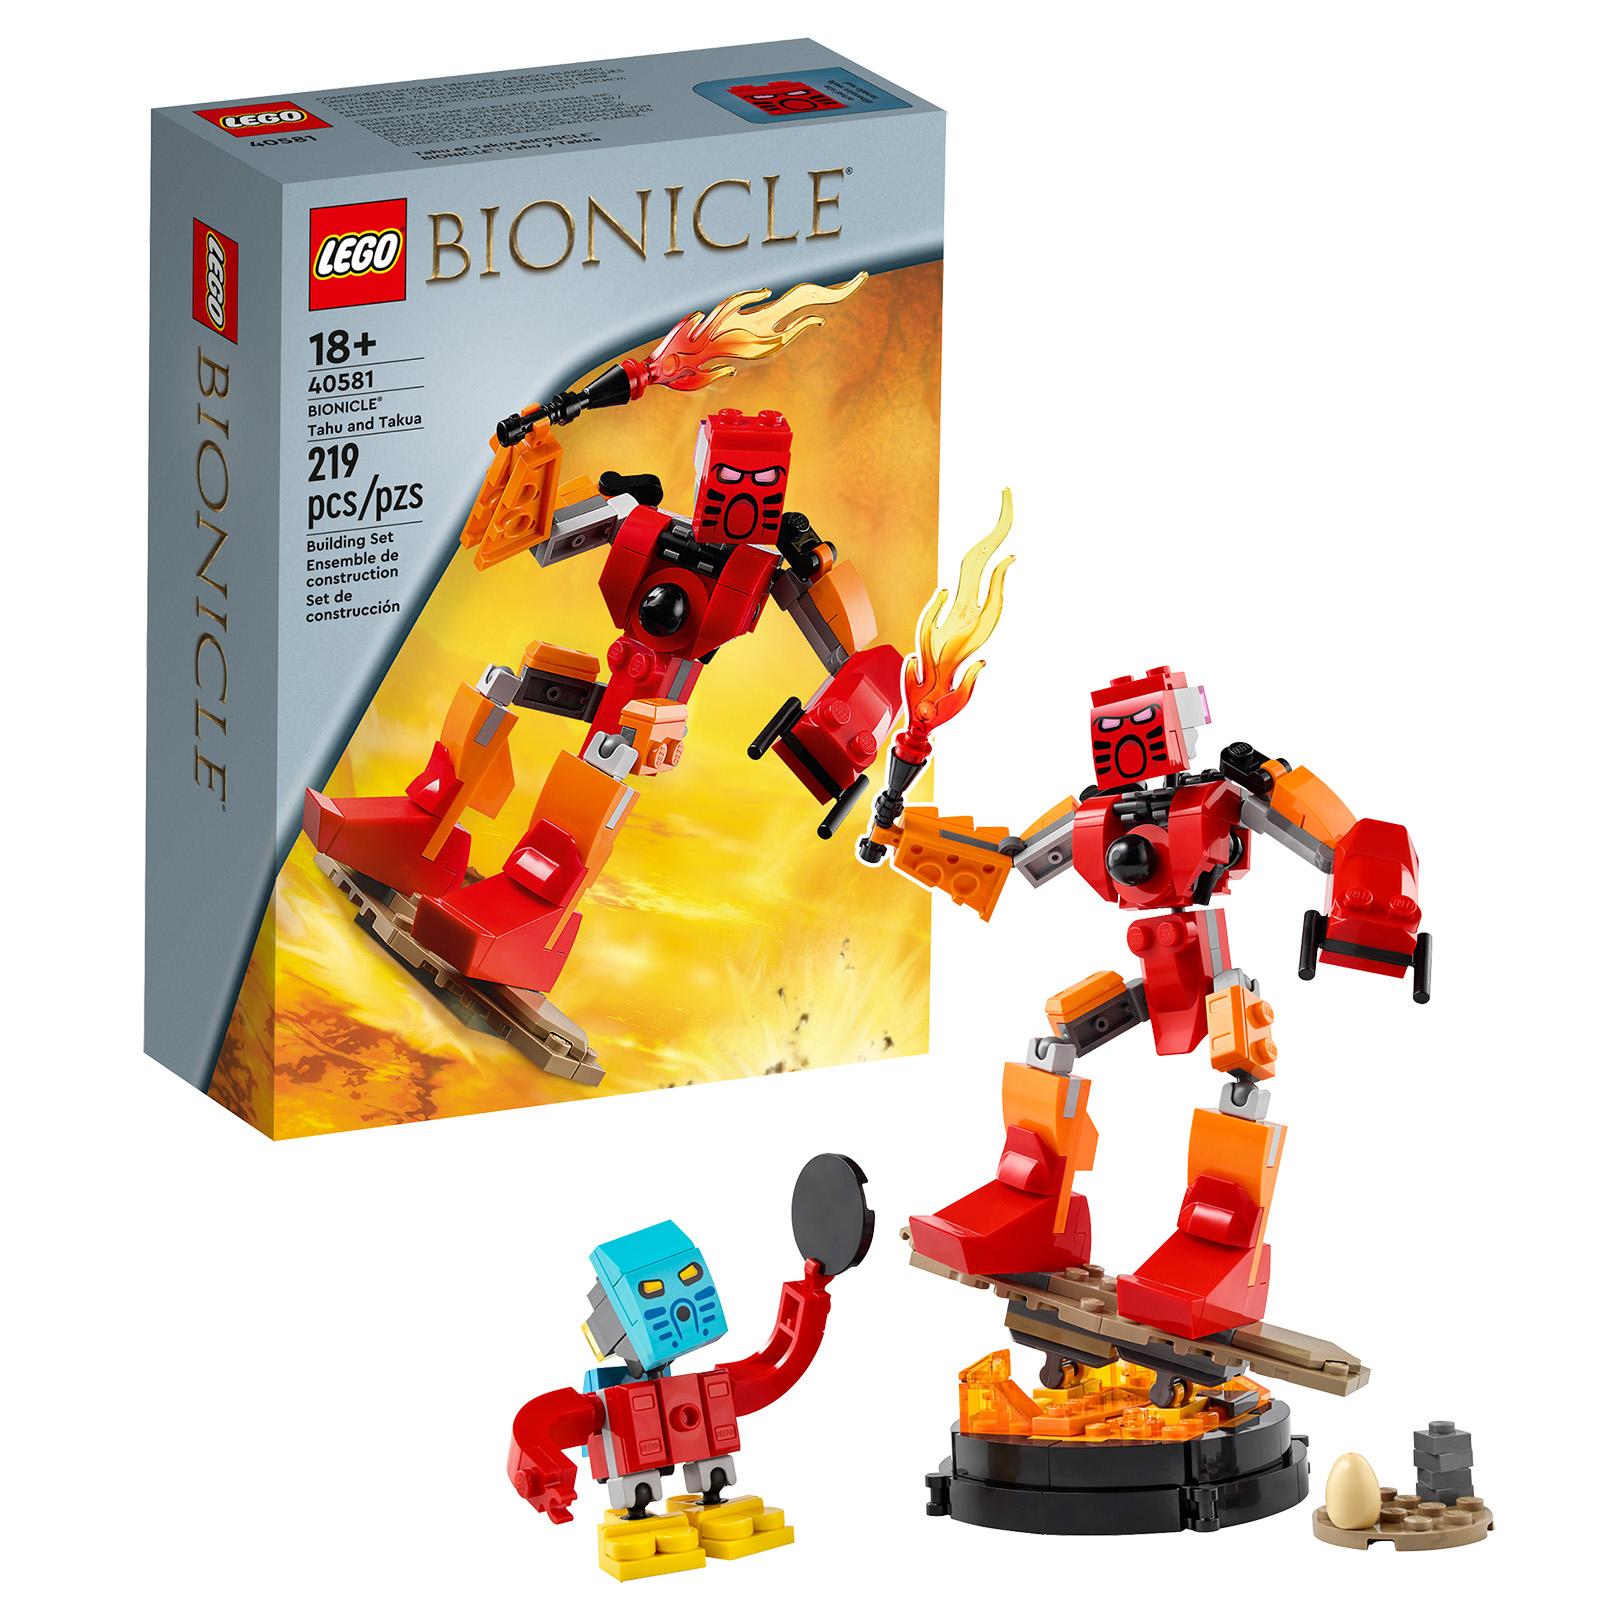 LEGO 40581 BIONICLE Таху и Такуа: промоционалният комплект е онлайн в магазина